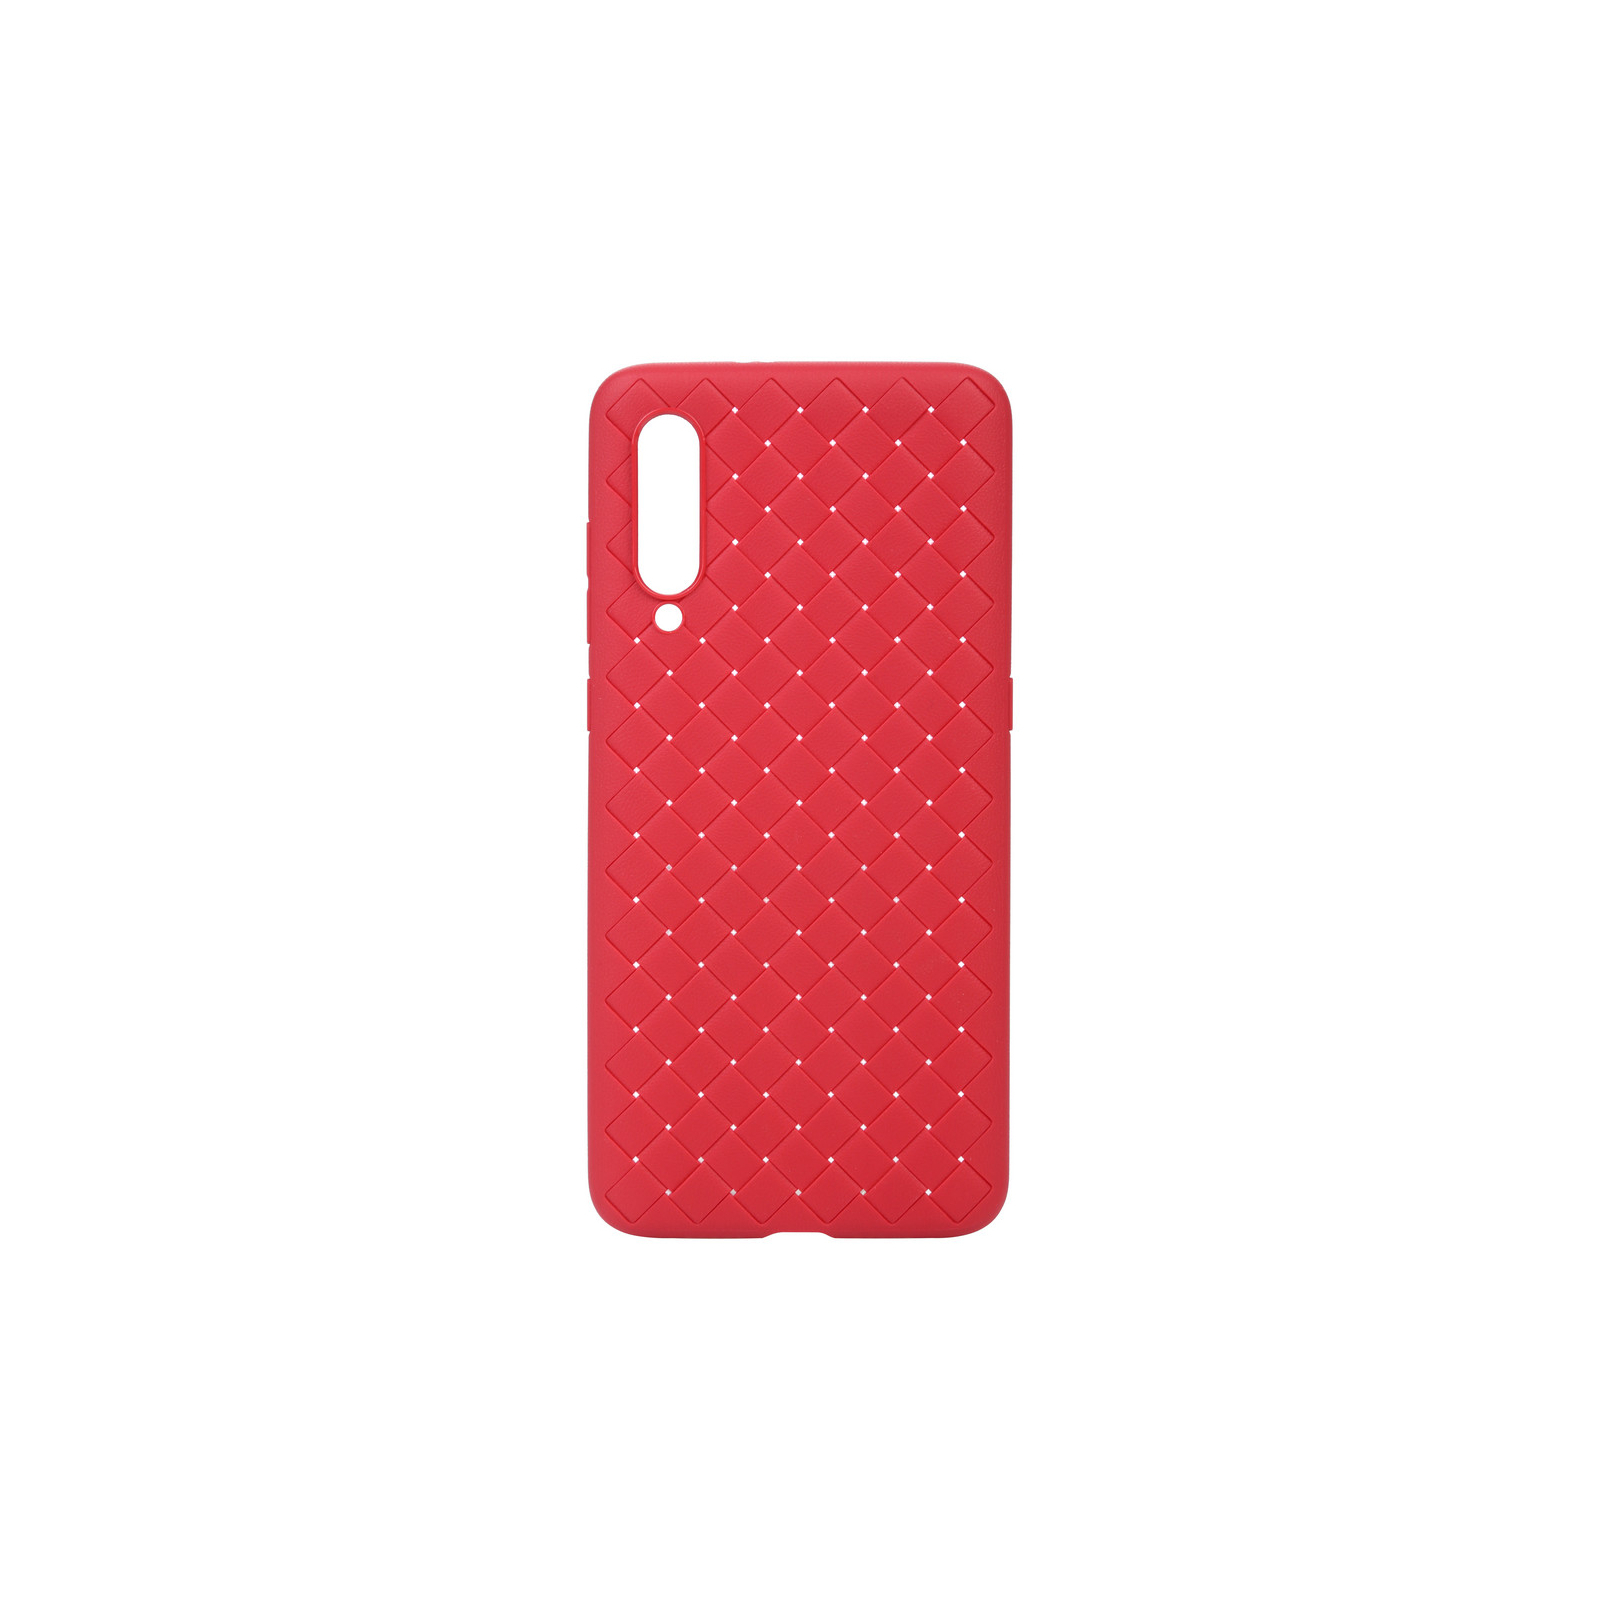 Чехол для мобильного телефона BeCover TPU Leather Case Xiaomi Mi 9 Red (703511) (703511)